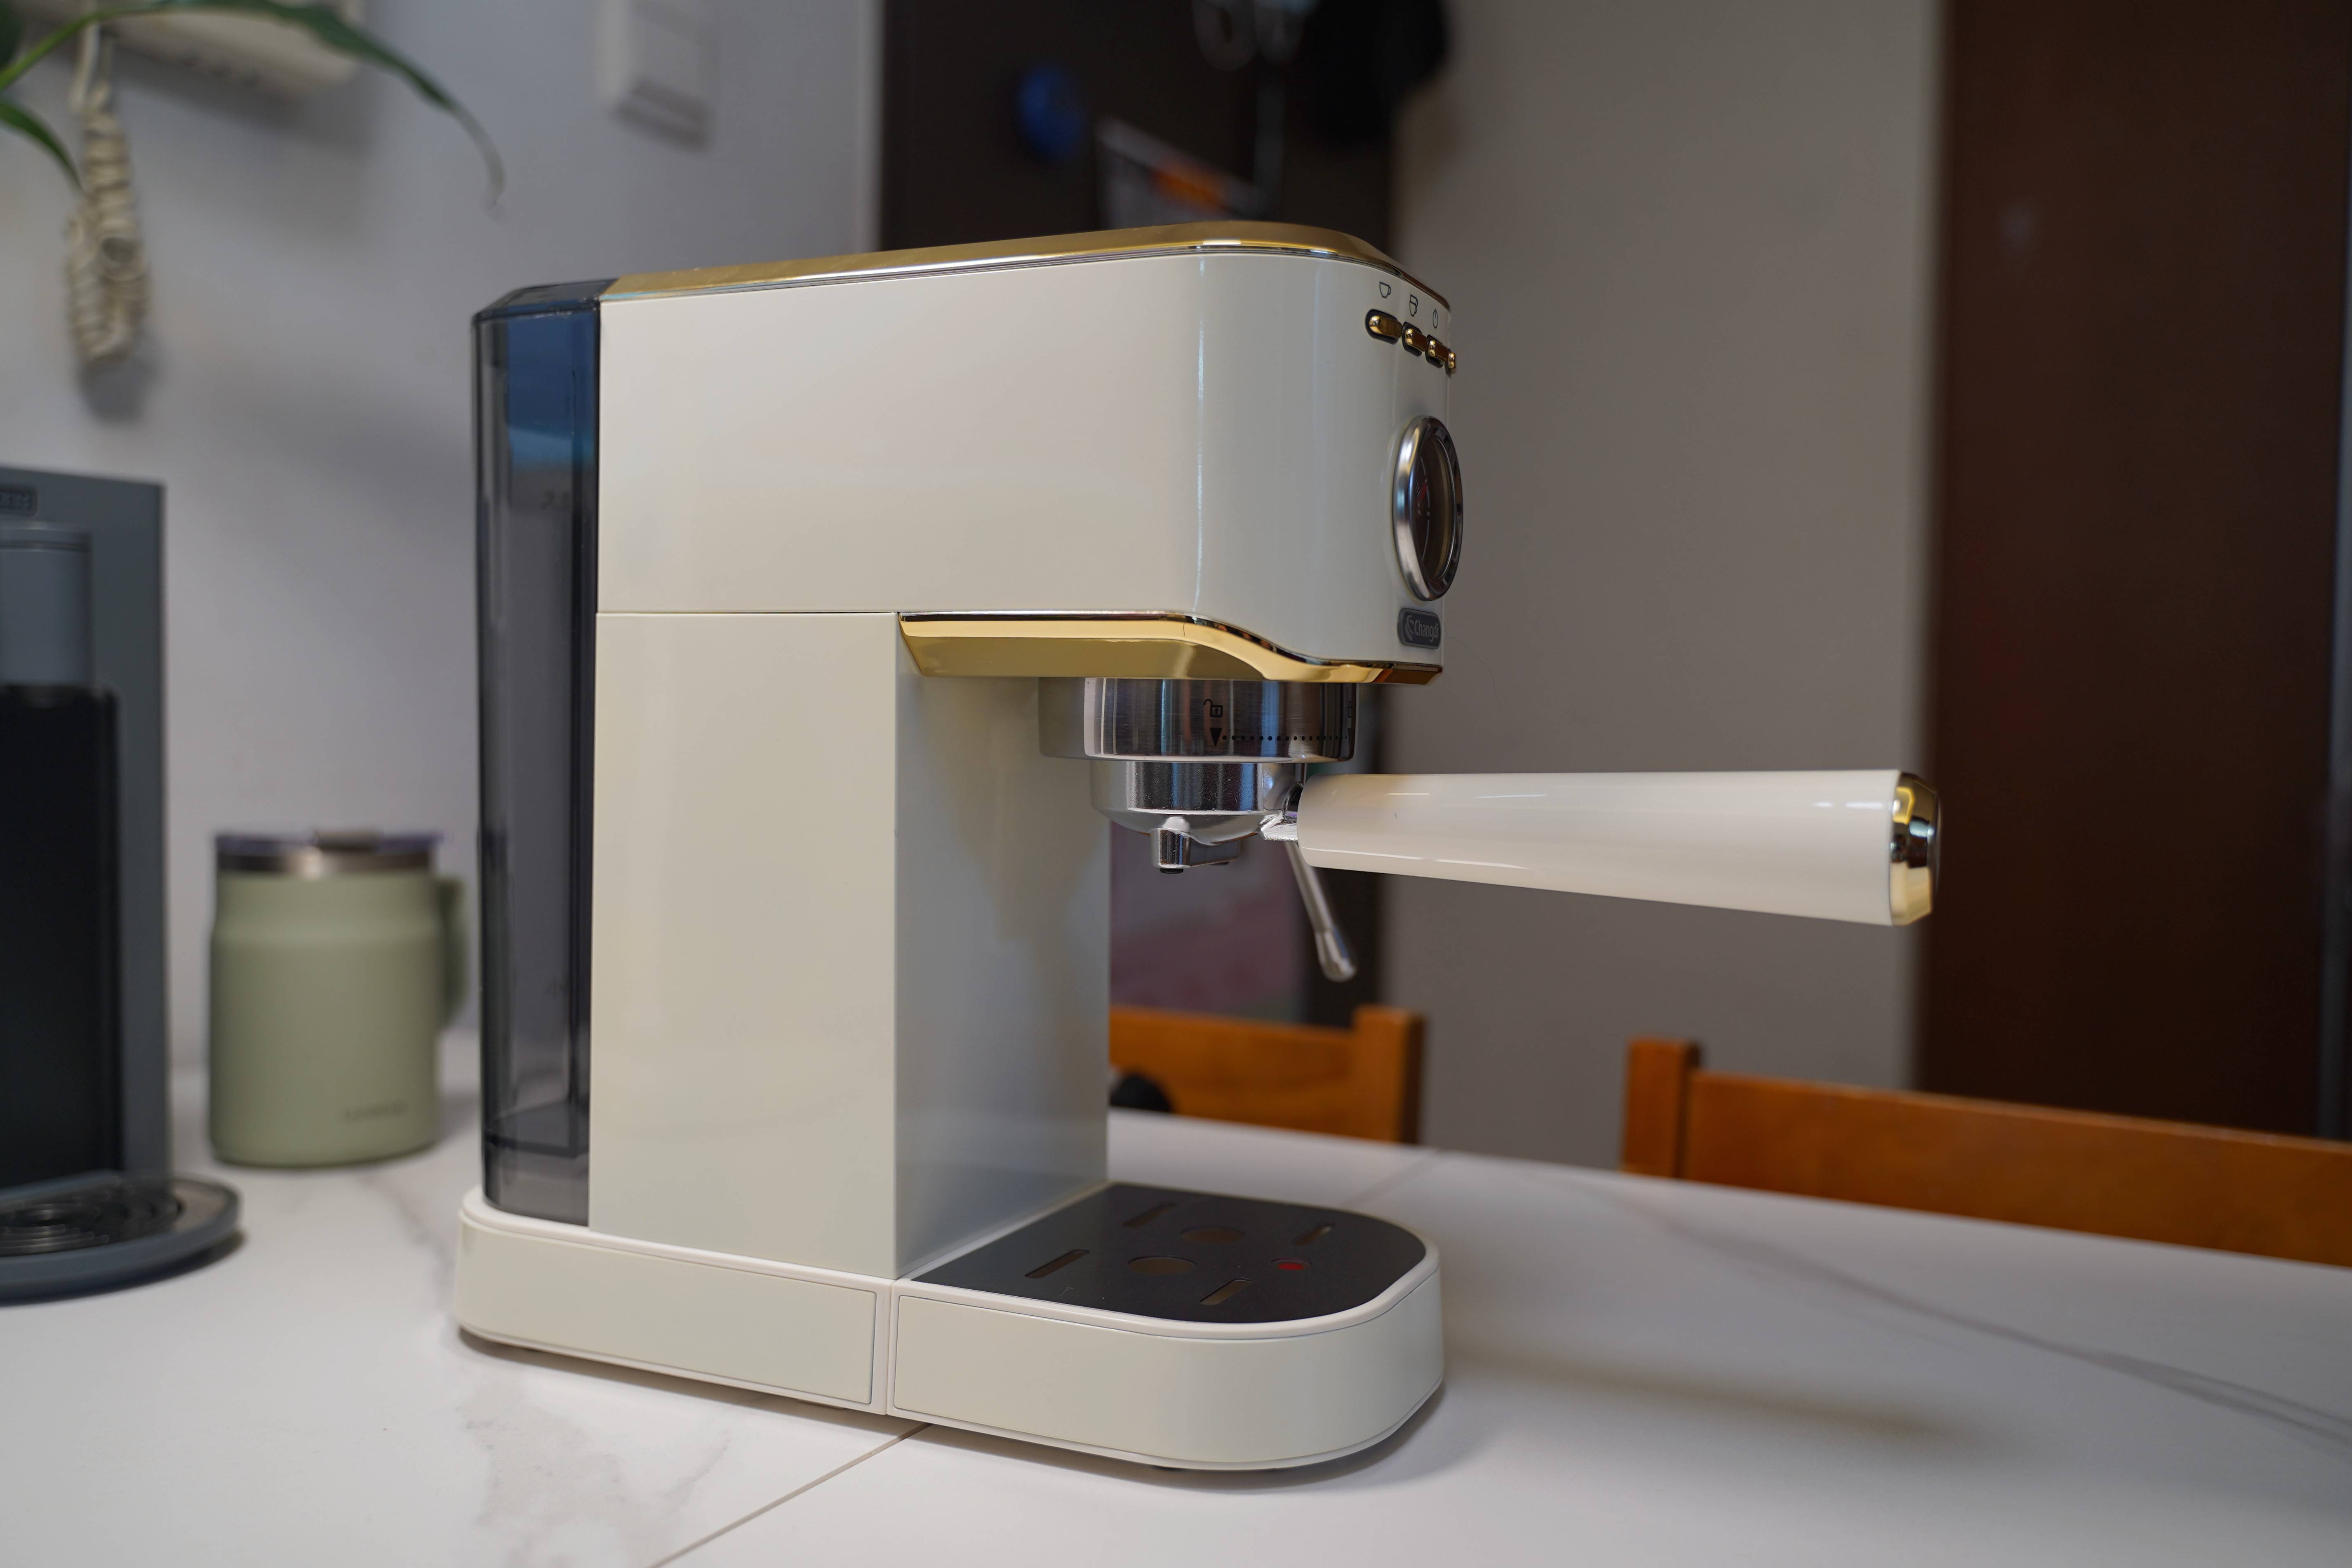 咖啡爱好者的折腾之路,胶囊机升级长帝银河半自动咖啡机